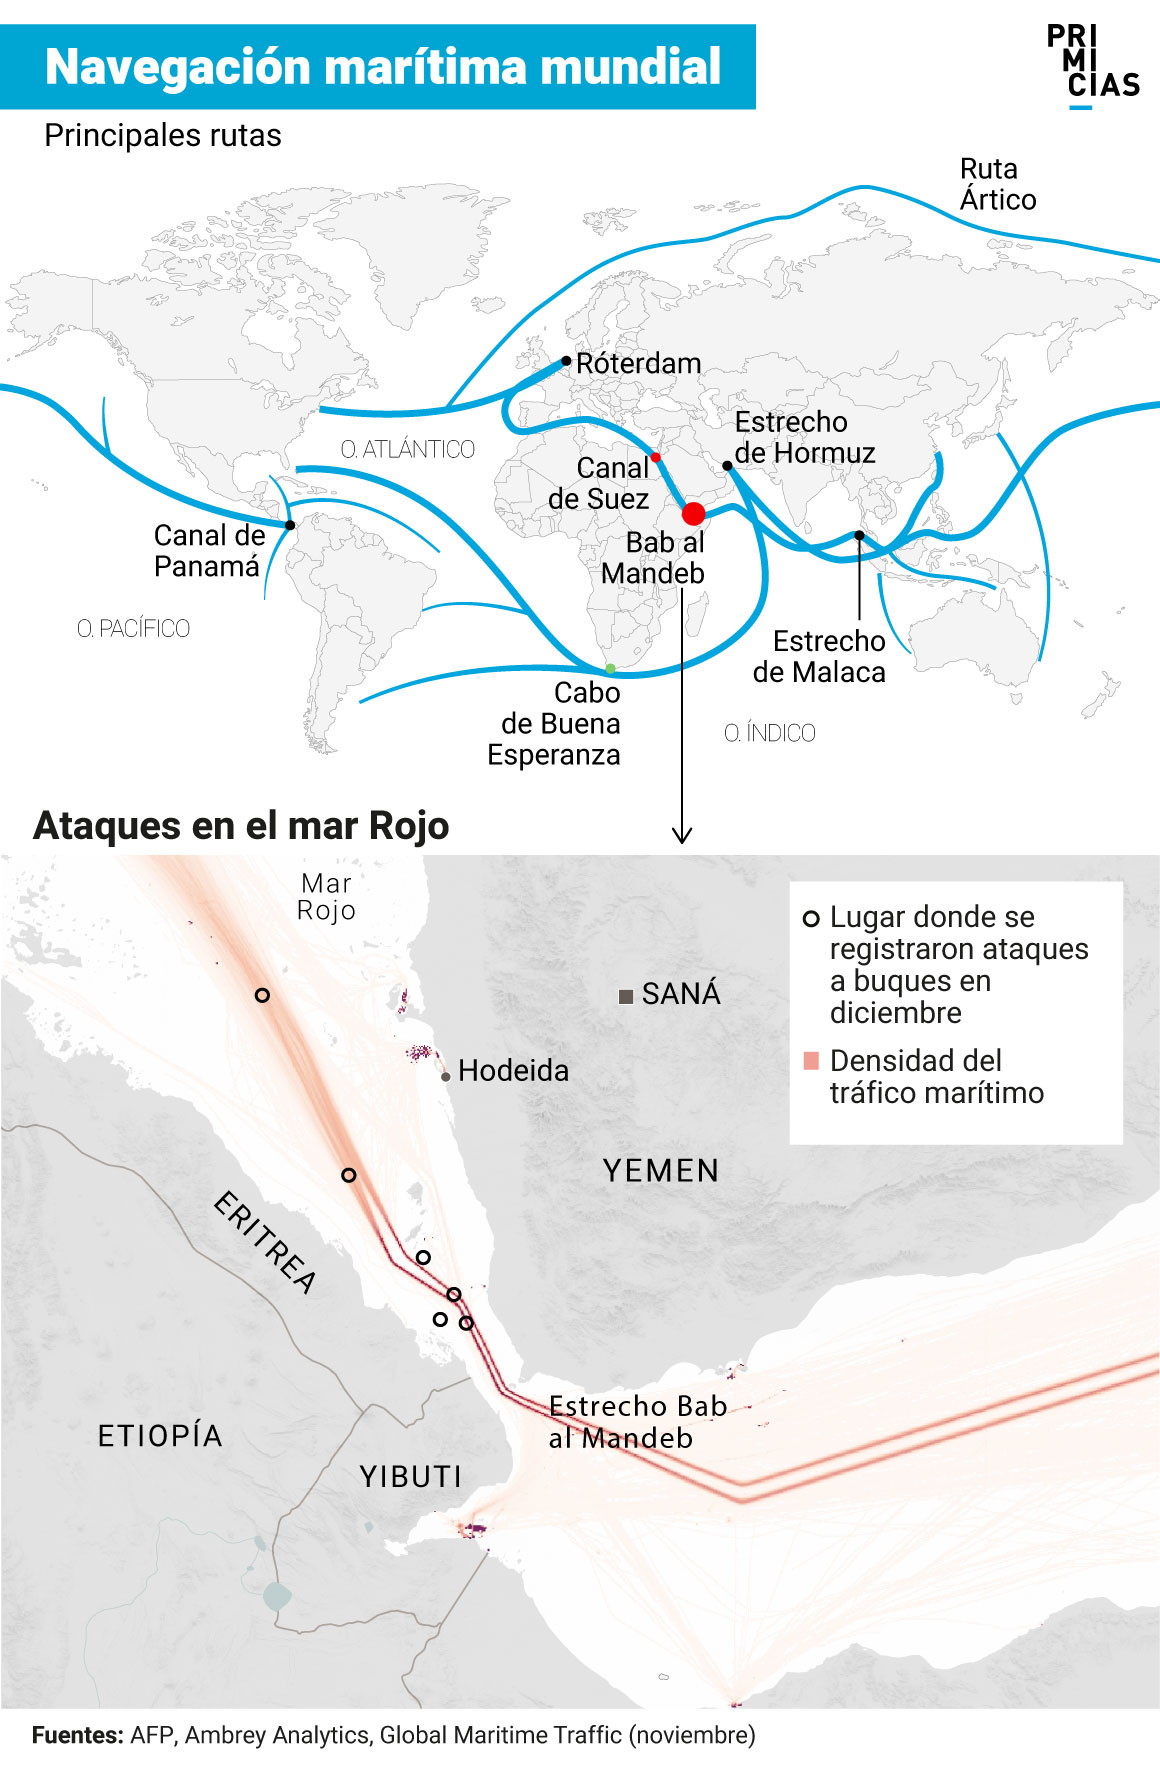 Navegación marítima mundial y ataques en el mar Rojo